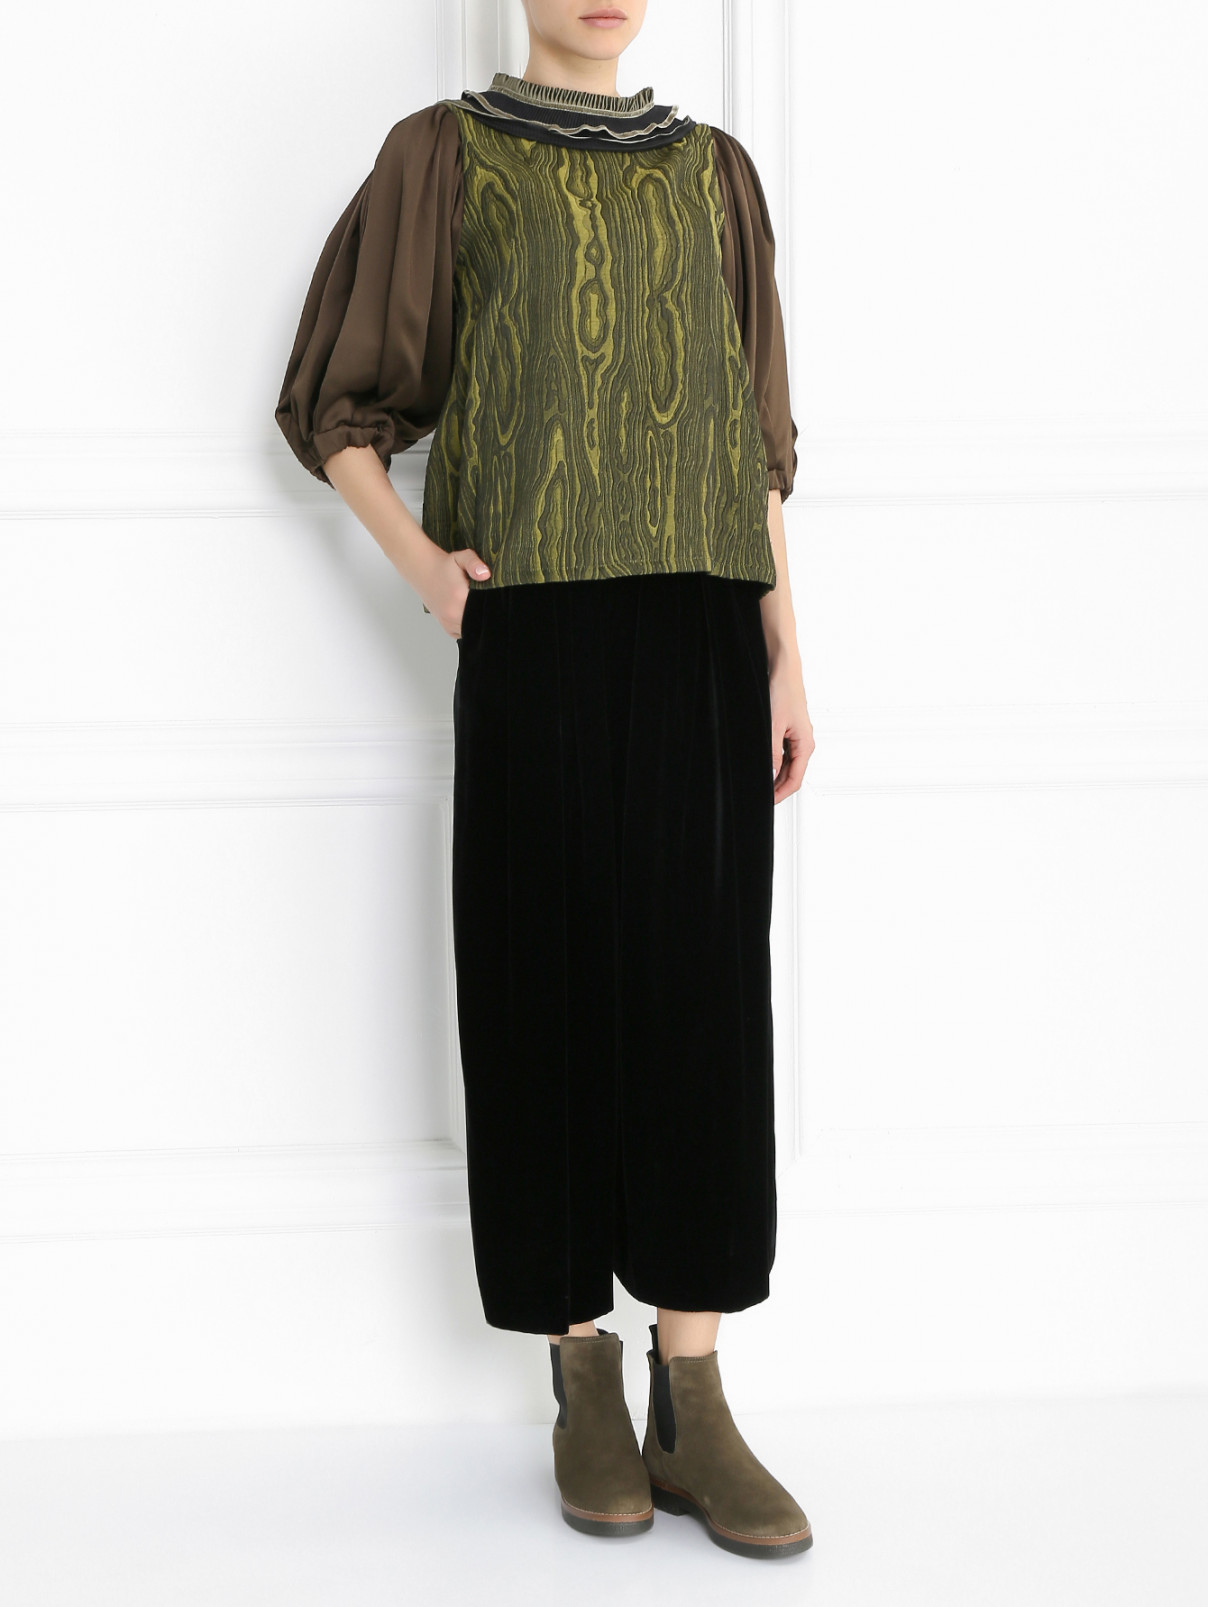 Блуза с узором и декоративной отделкой Antonio Marras  –  Модель Общий вид  – Цвет:  Зеленый